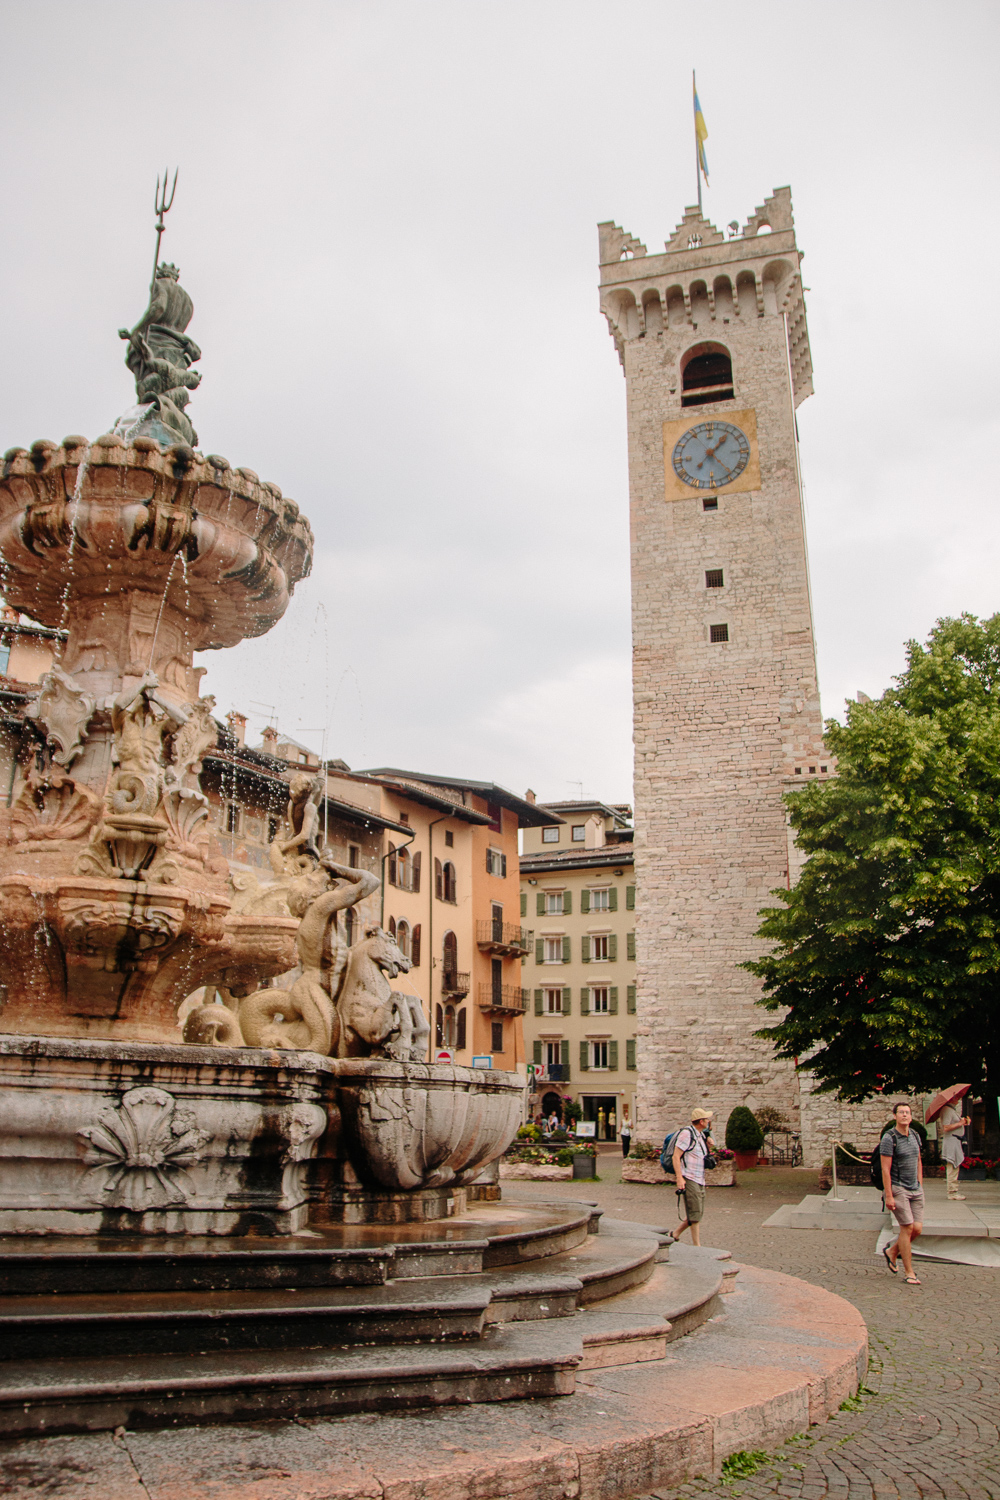 Fountain in Piazza Duomo in Trento